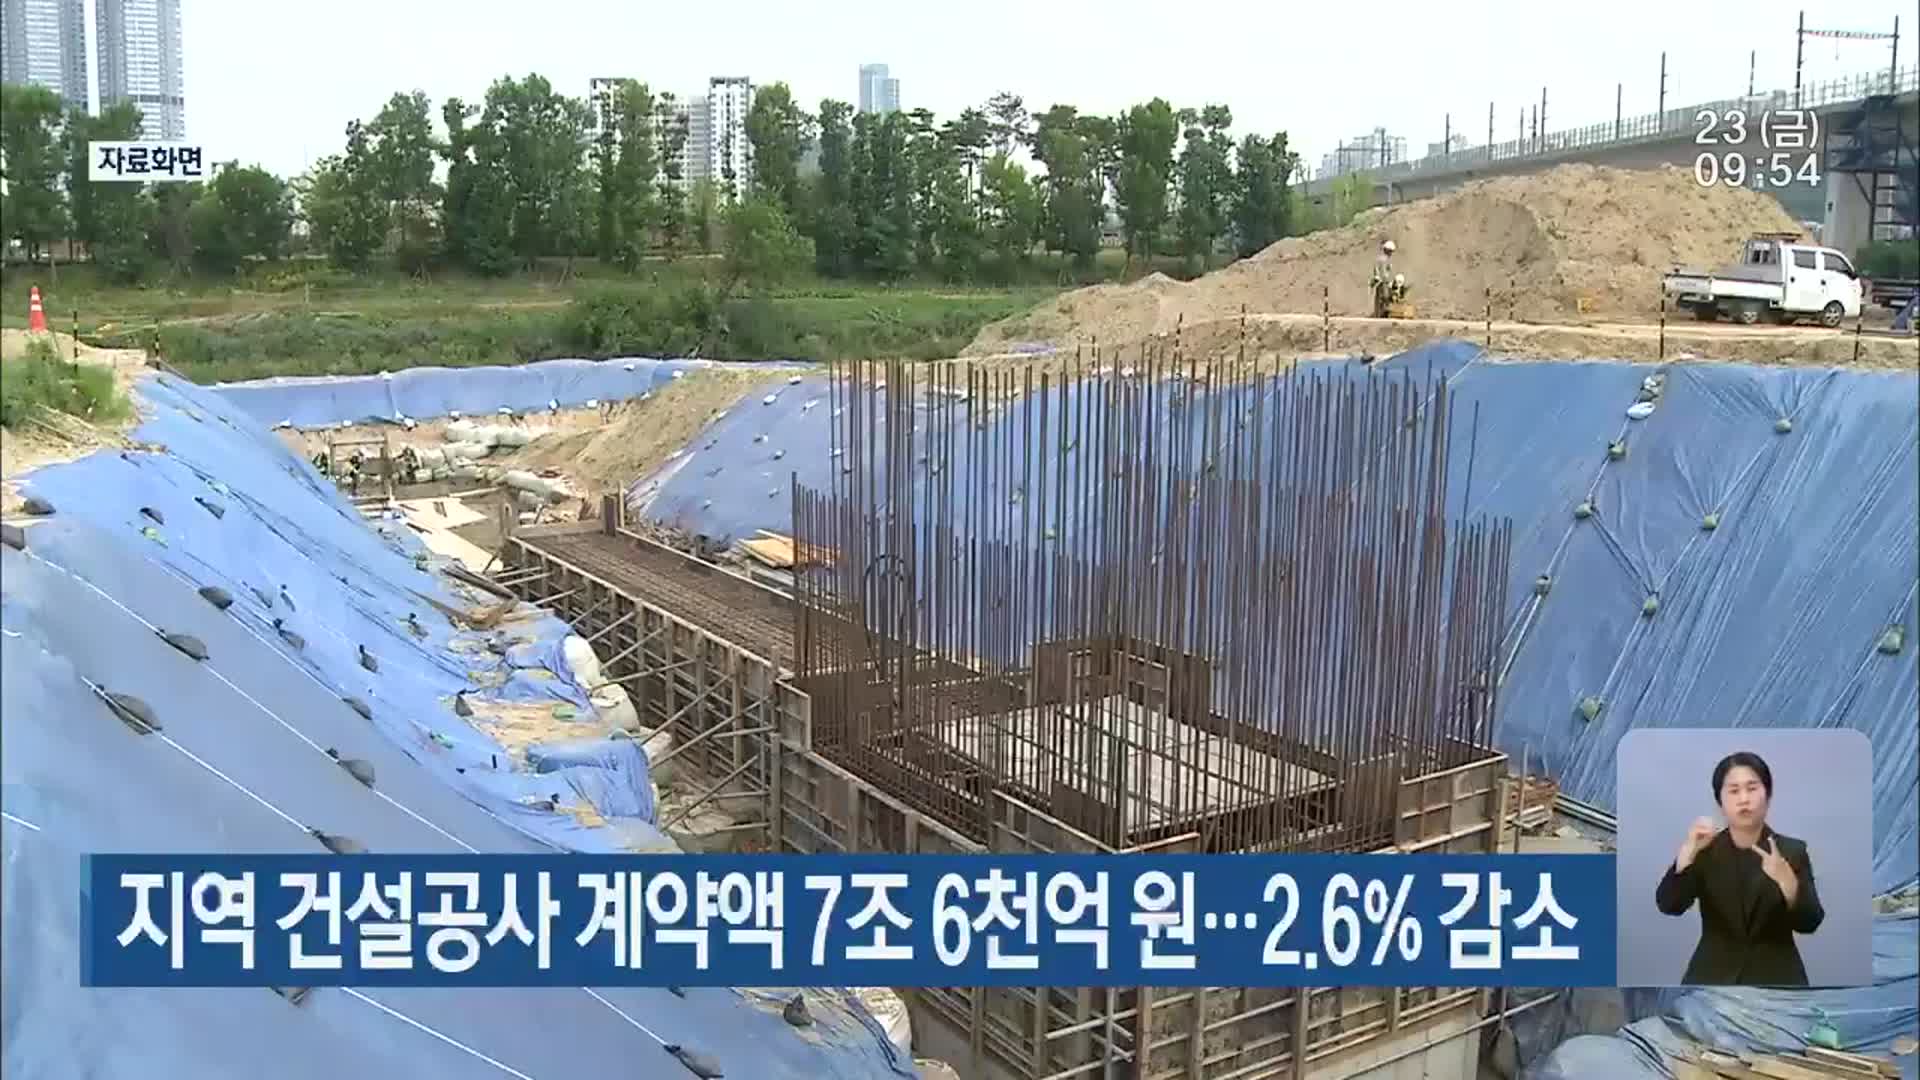 대전·세종·충남 건설공사 계약액 7조 6천억 원…2.6% 감소